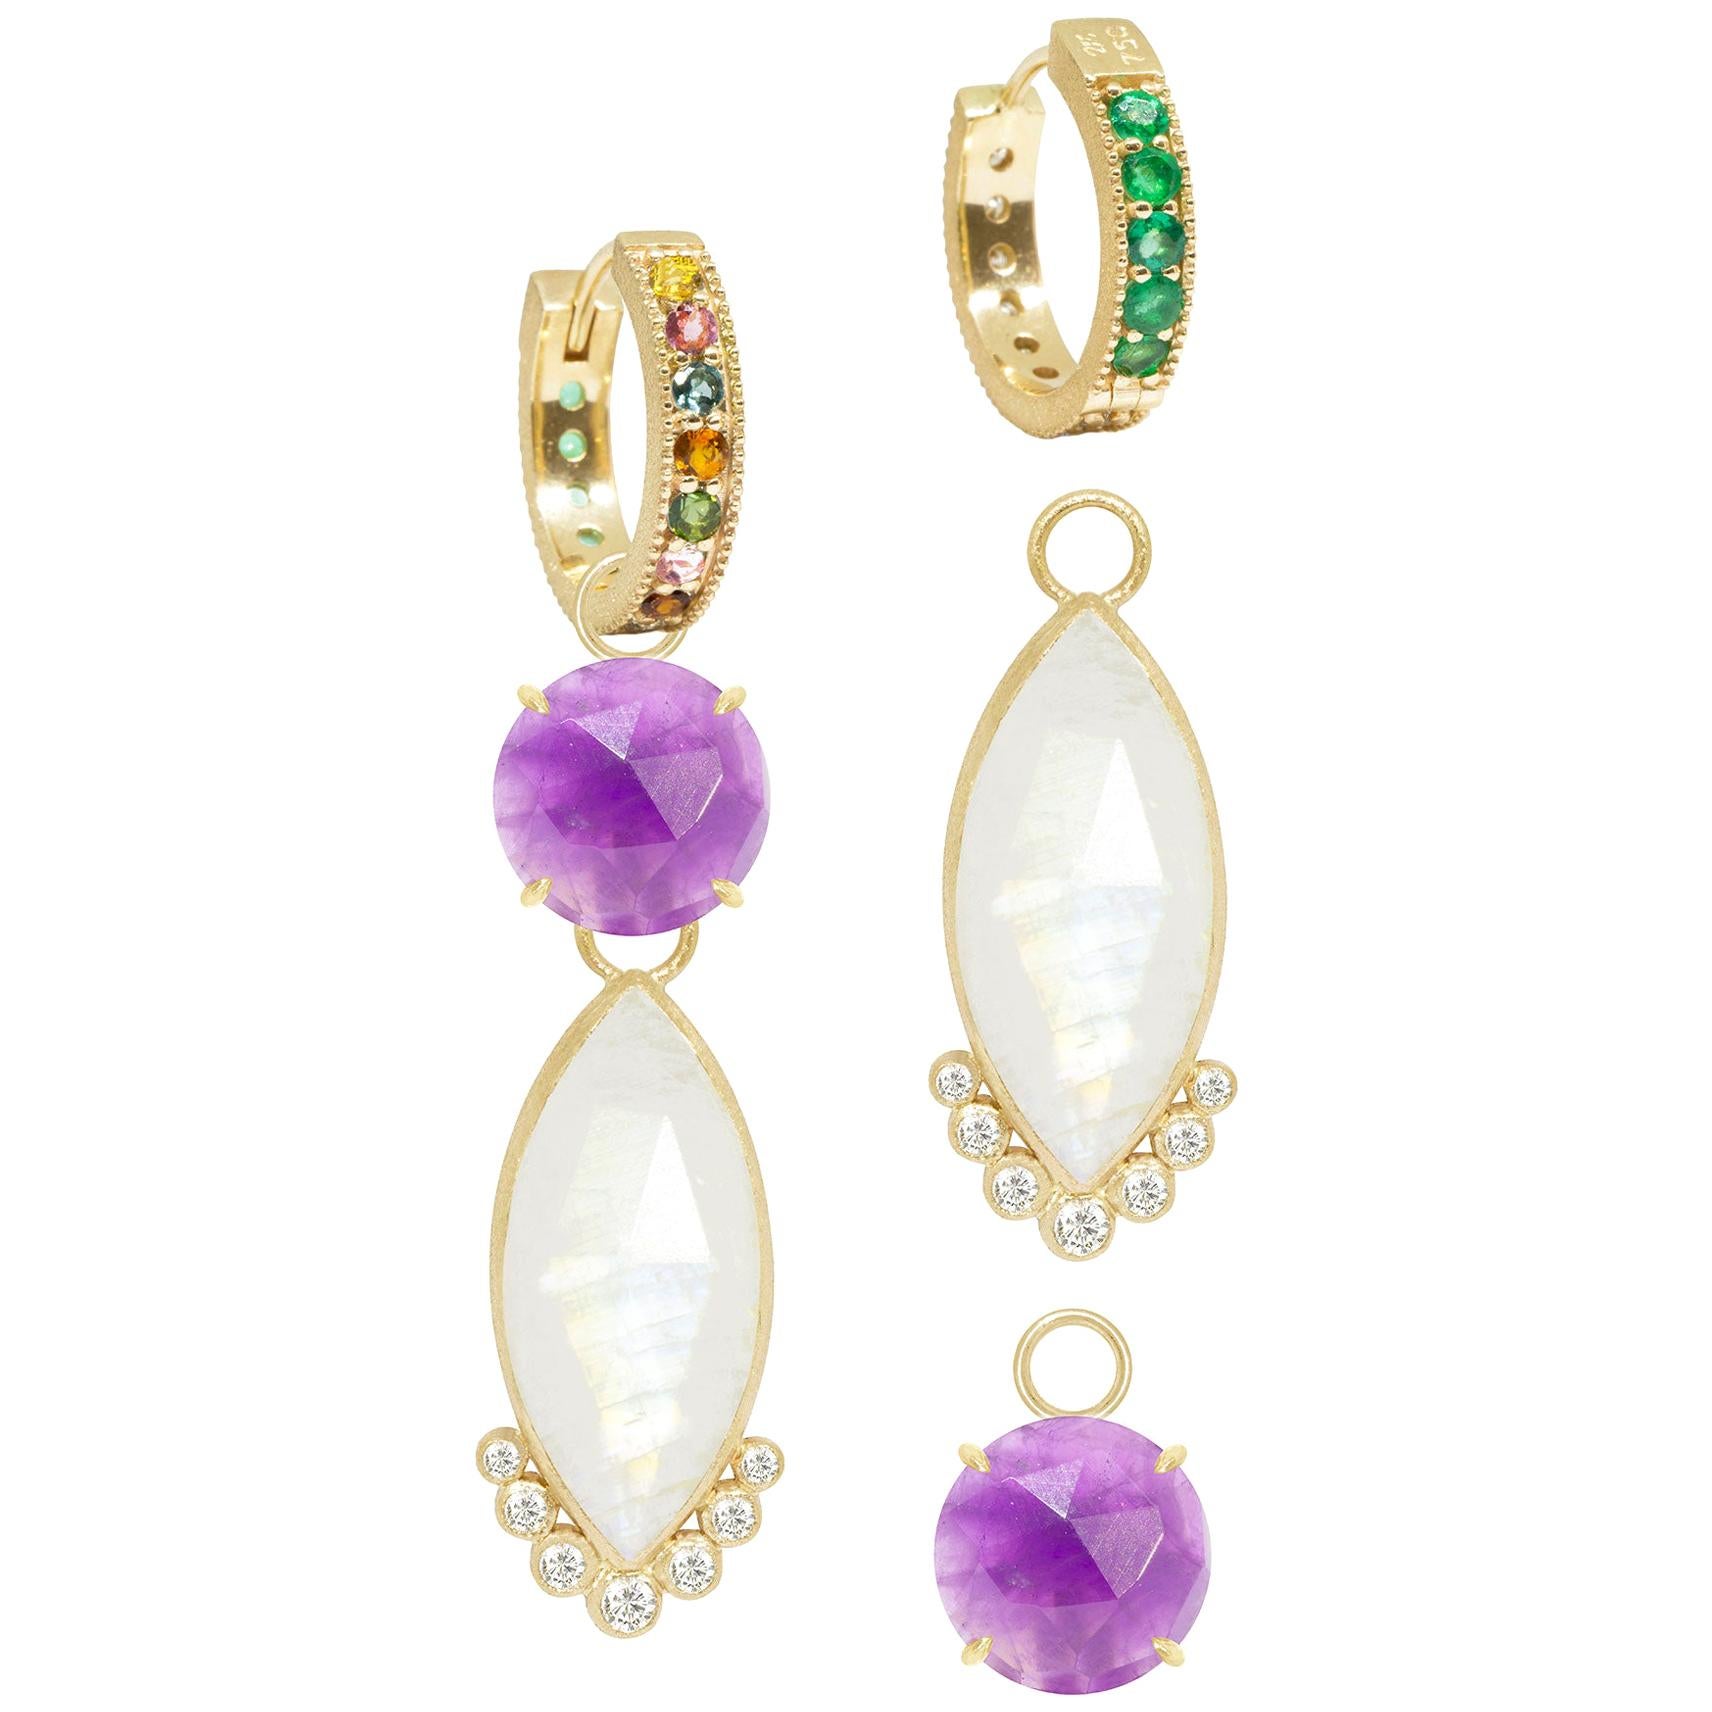 Petal Amethyst Charms and Intricate 18 Karat Gold Reversible Huggies Earrings